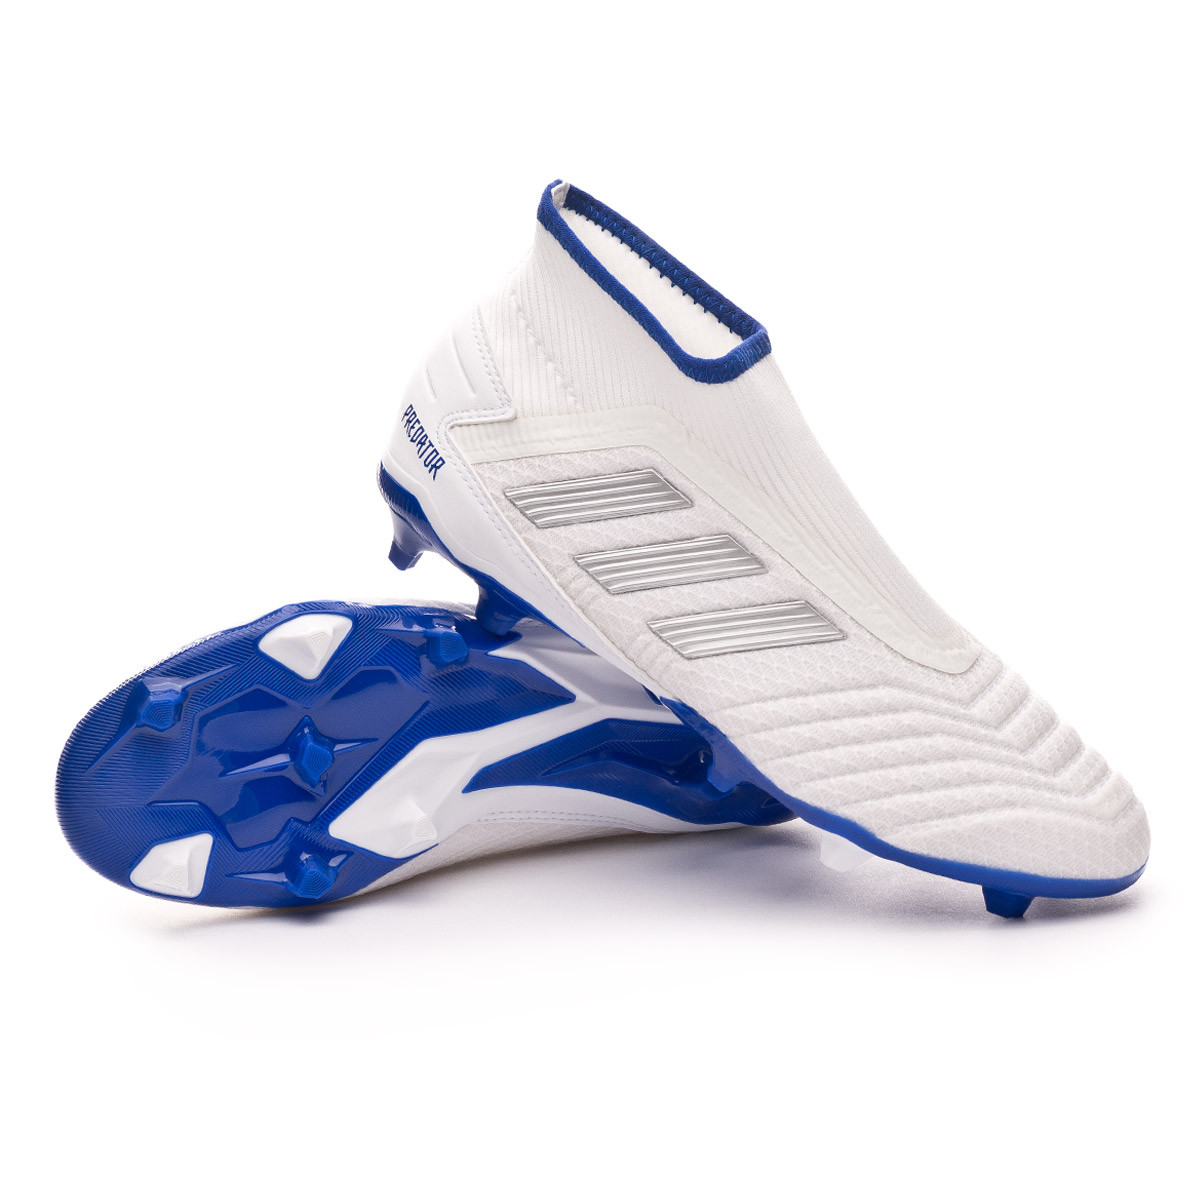 adidas predator 19.3 fg blue